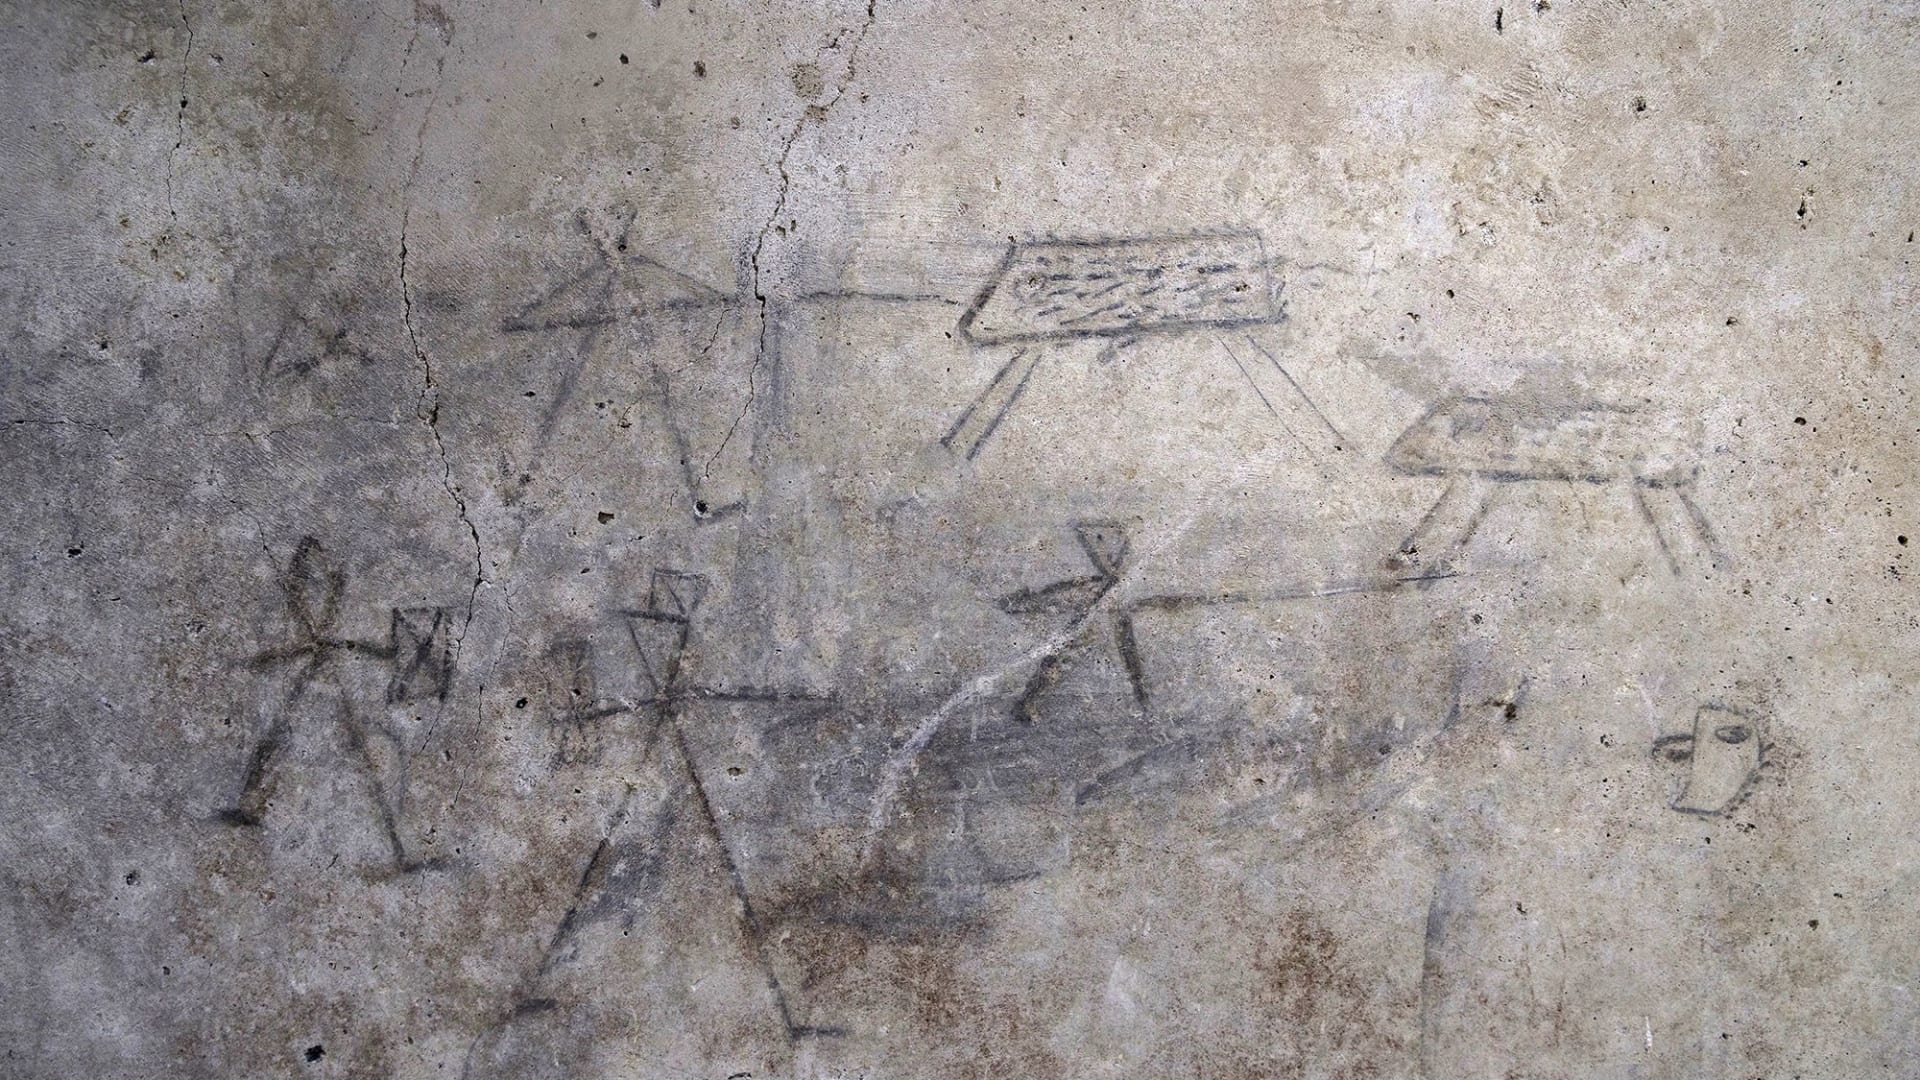 لوحات رومانية جديدة.. شاهد ما اكتشفه علماء الآثار أثناء التنقيب في بومبي